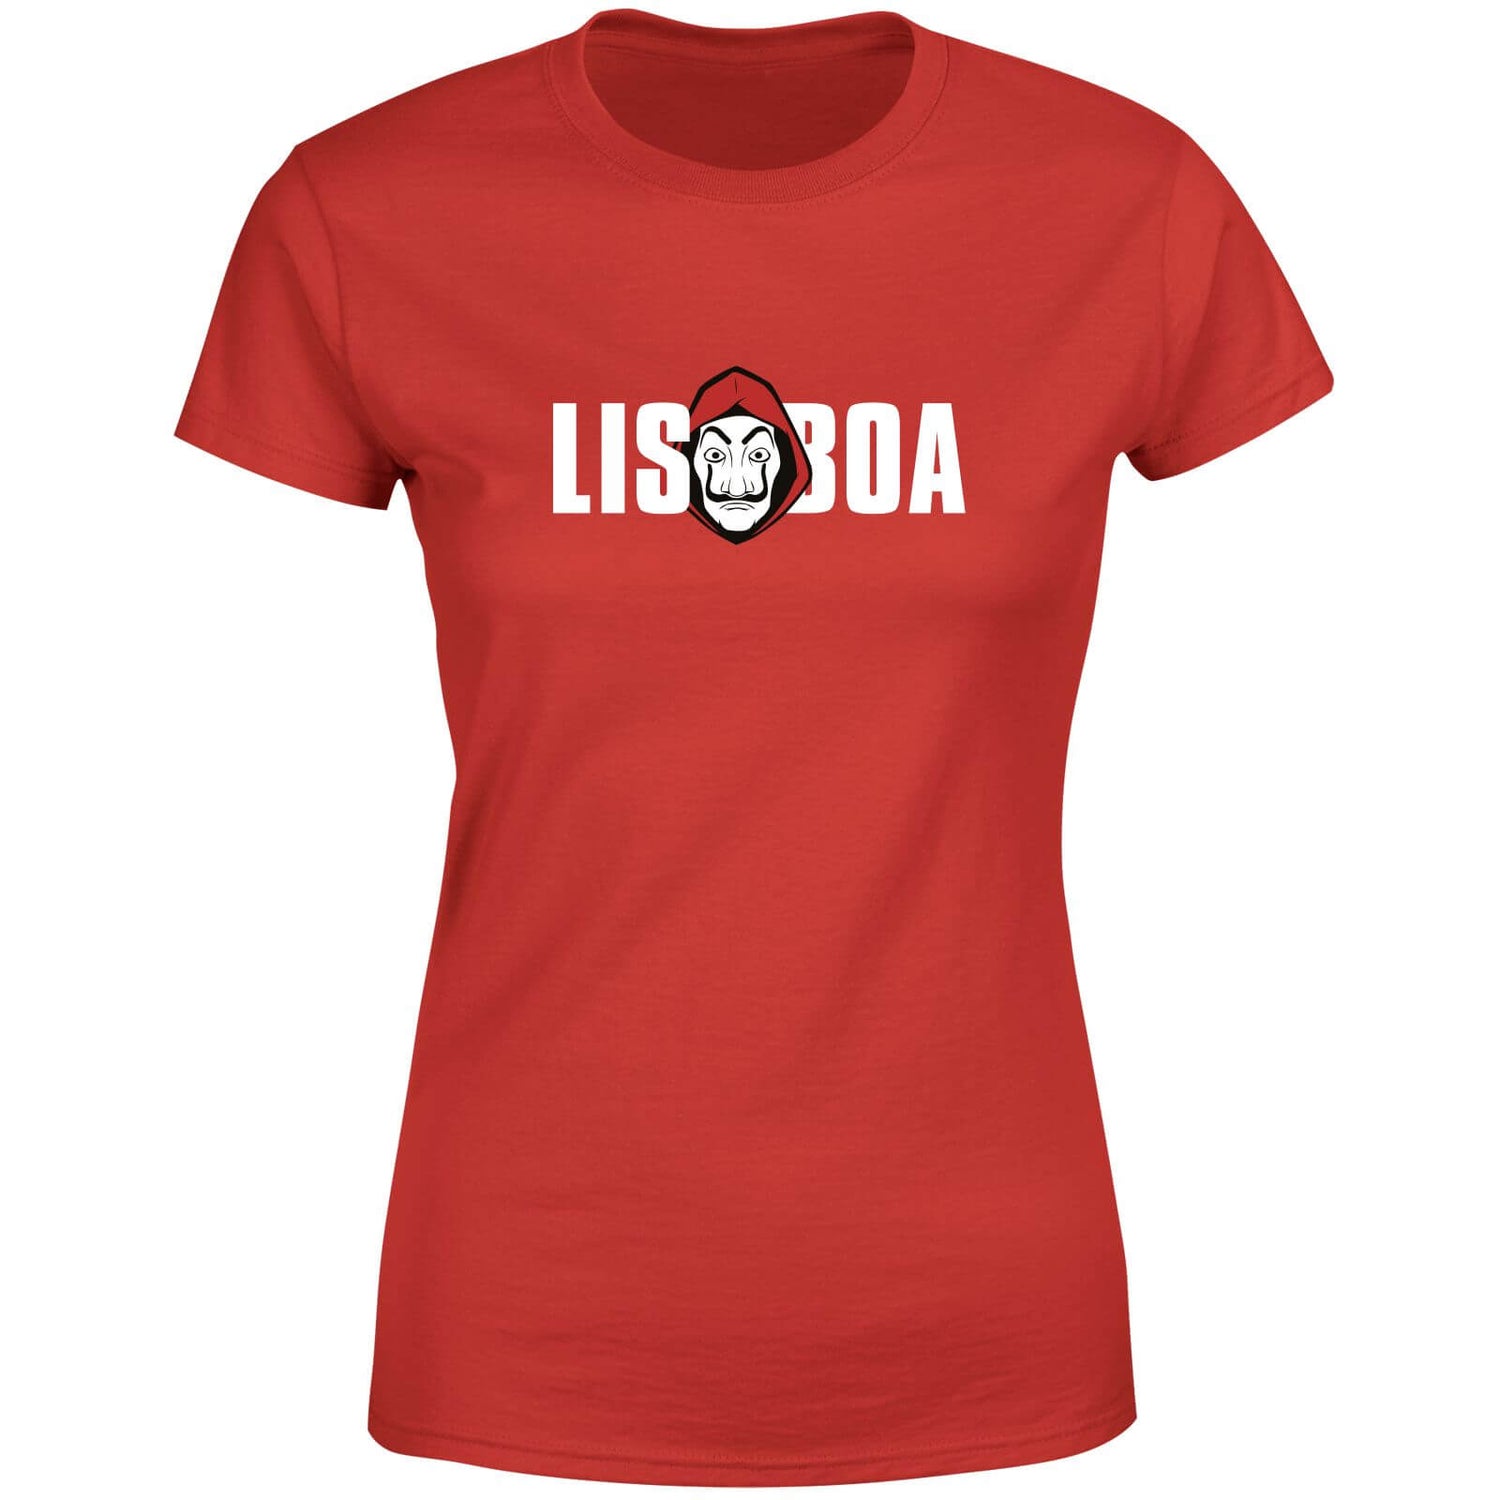 Money Heist Lisboa Women's T-Shirt - Red